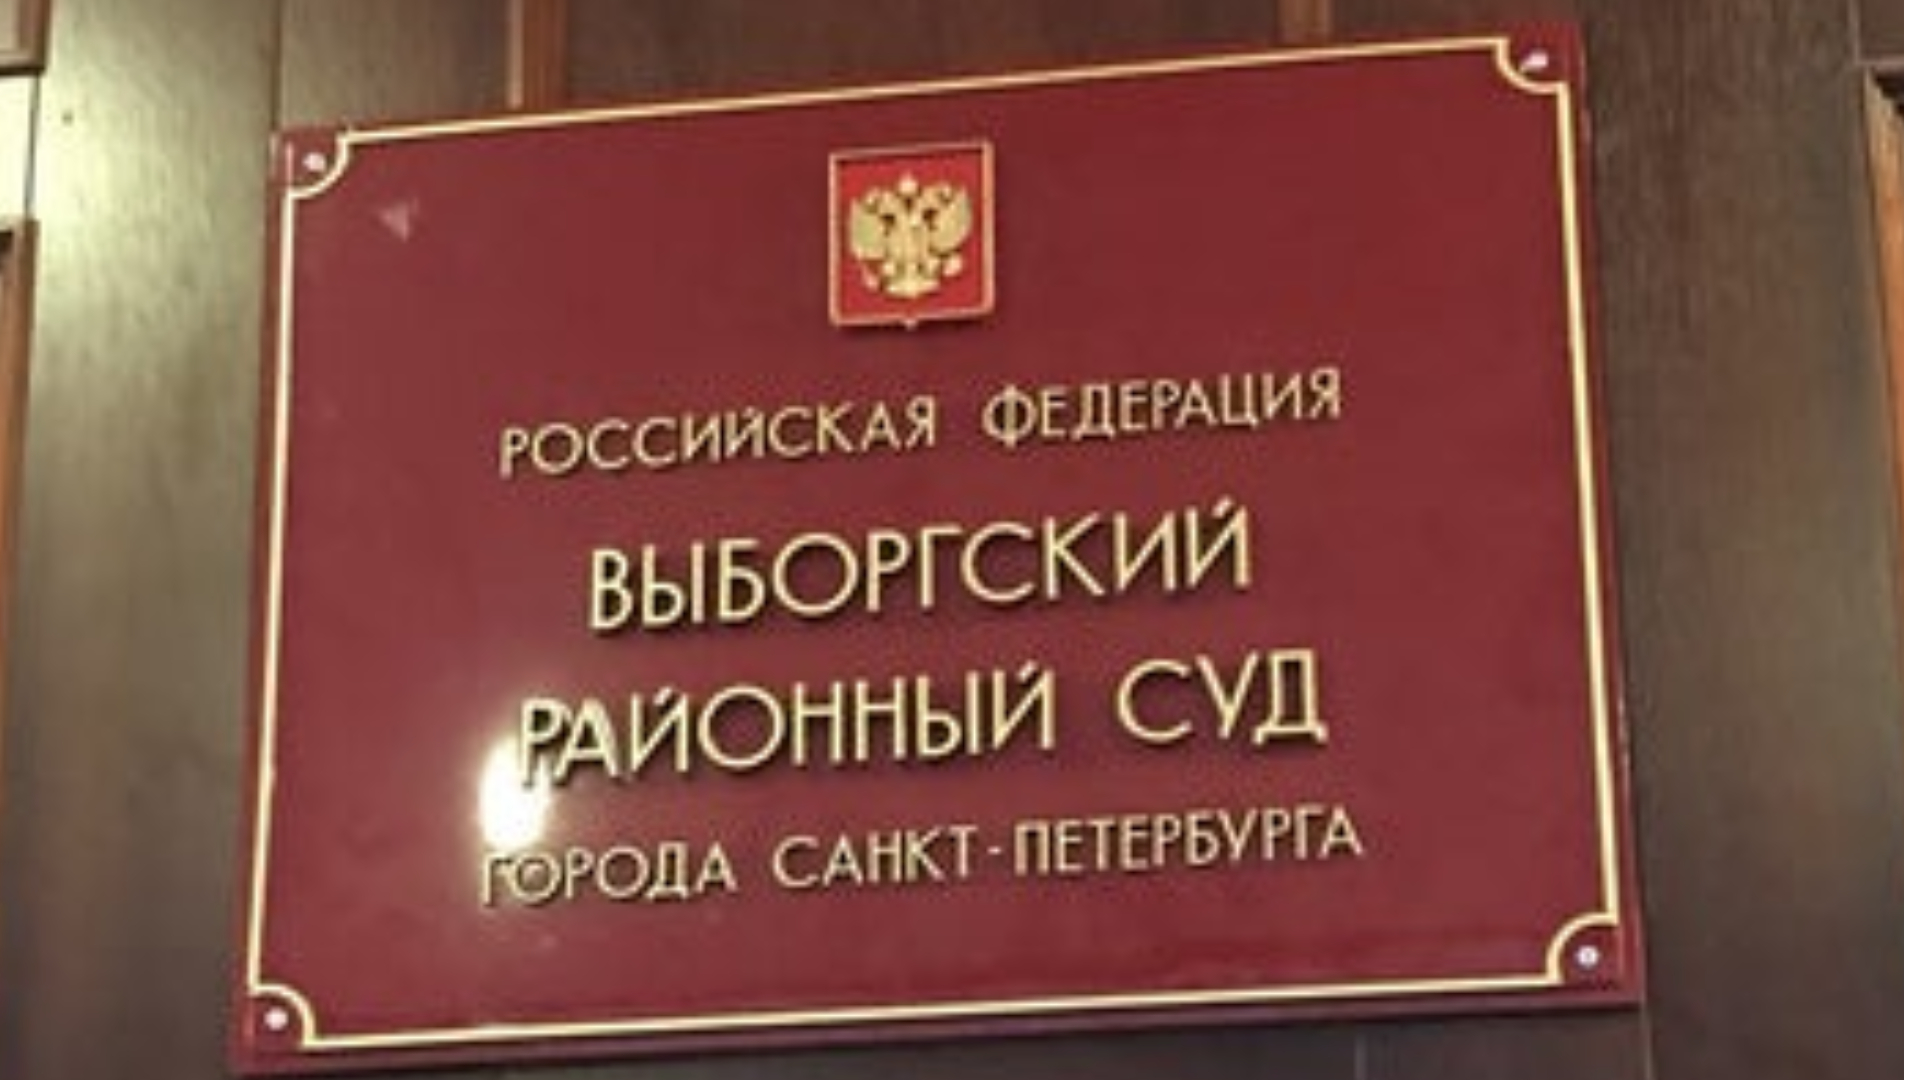 Центральный районный суд телефоны судей